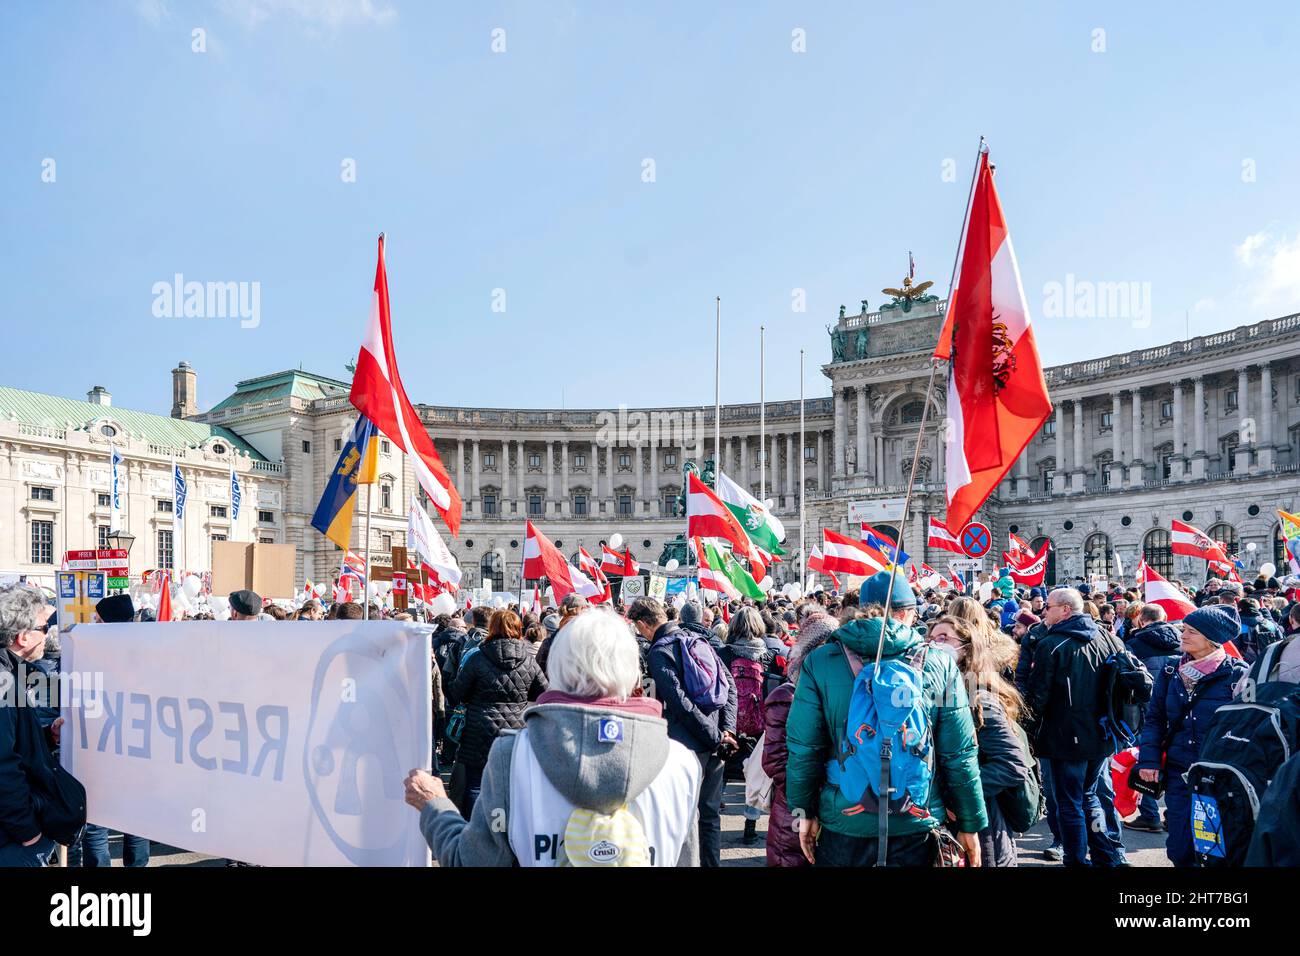 Drapeaux et personnes protestant lors d'une manifestation anti-vaccin à Vienne, Autriche, février 2022 Banque D'Images